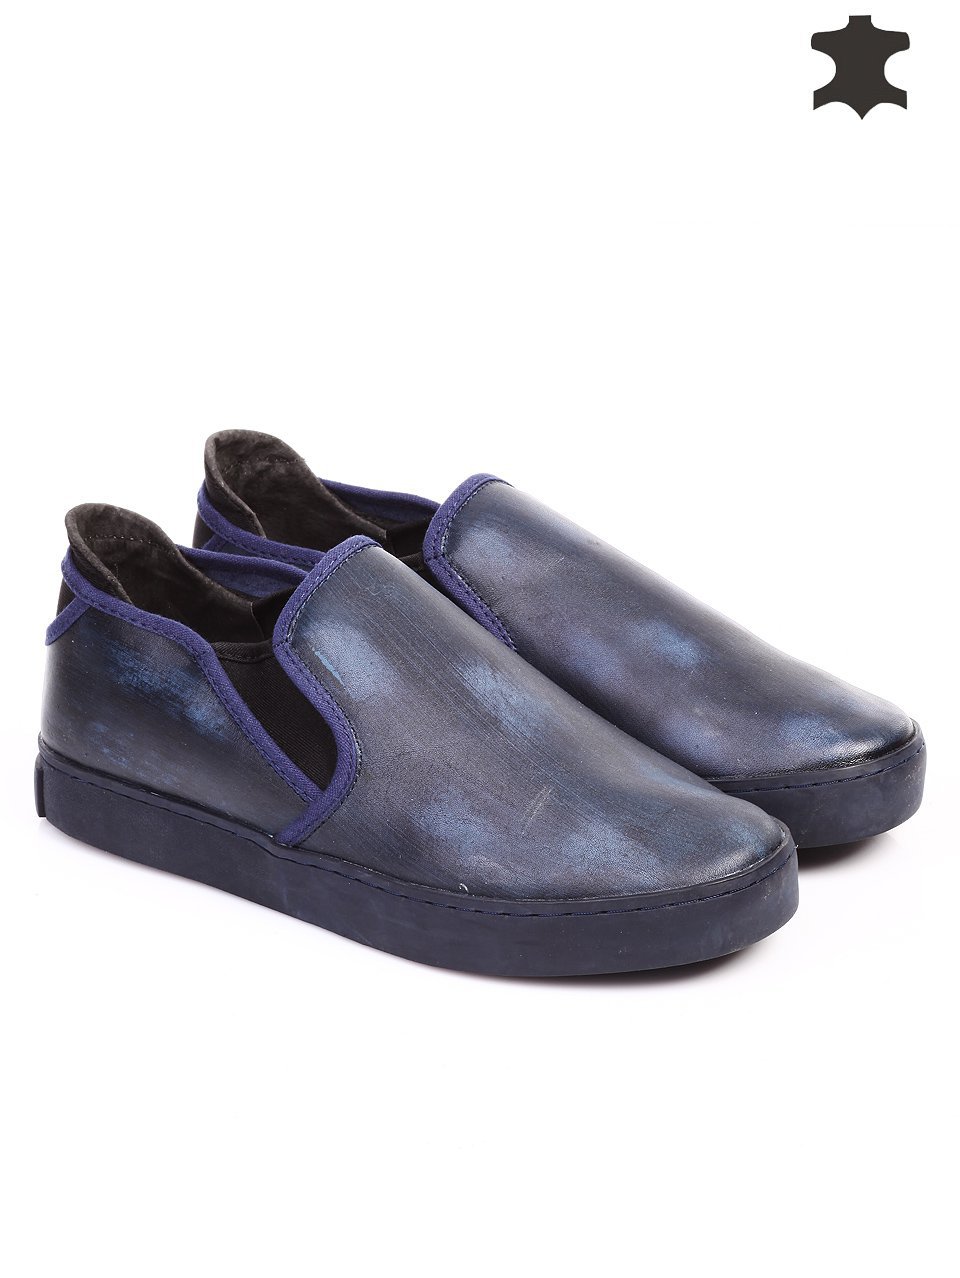 Ежедневни мъжки обувки от естествена кожа в синьо 7T-15729 navy